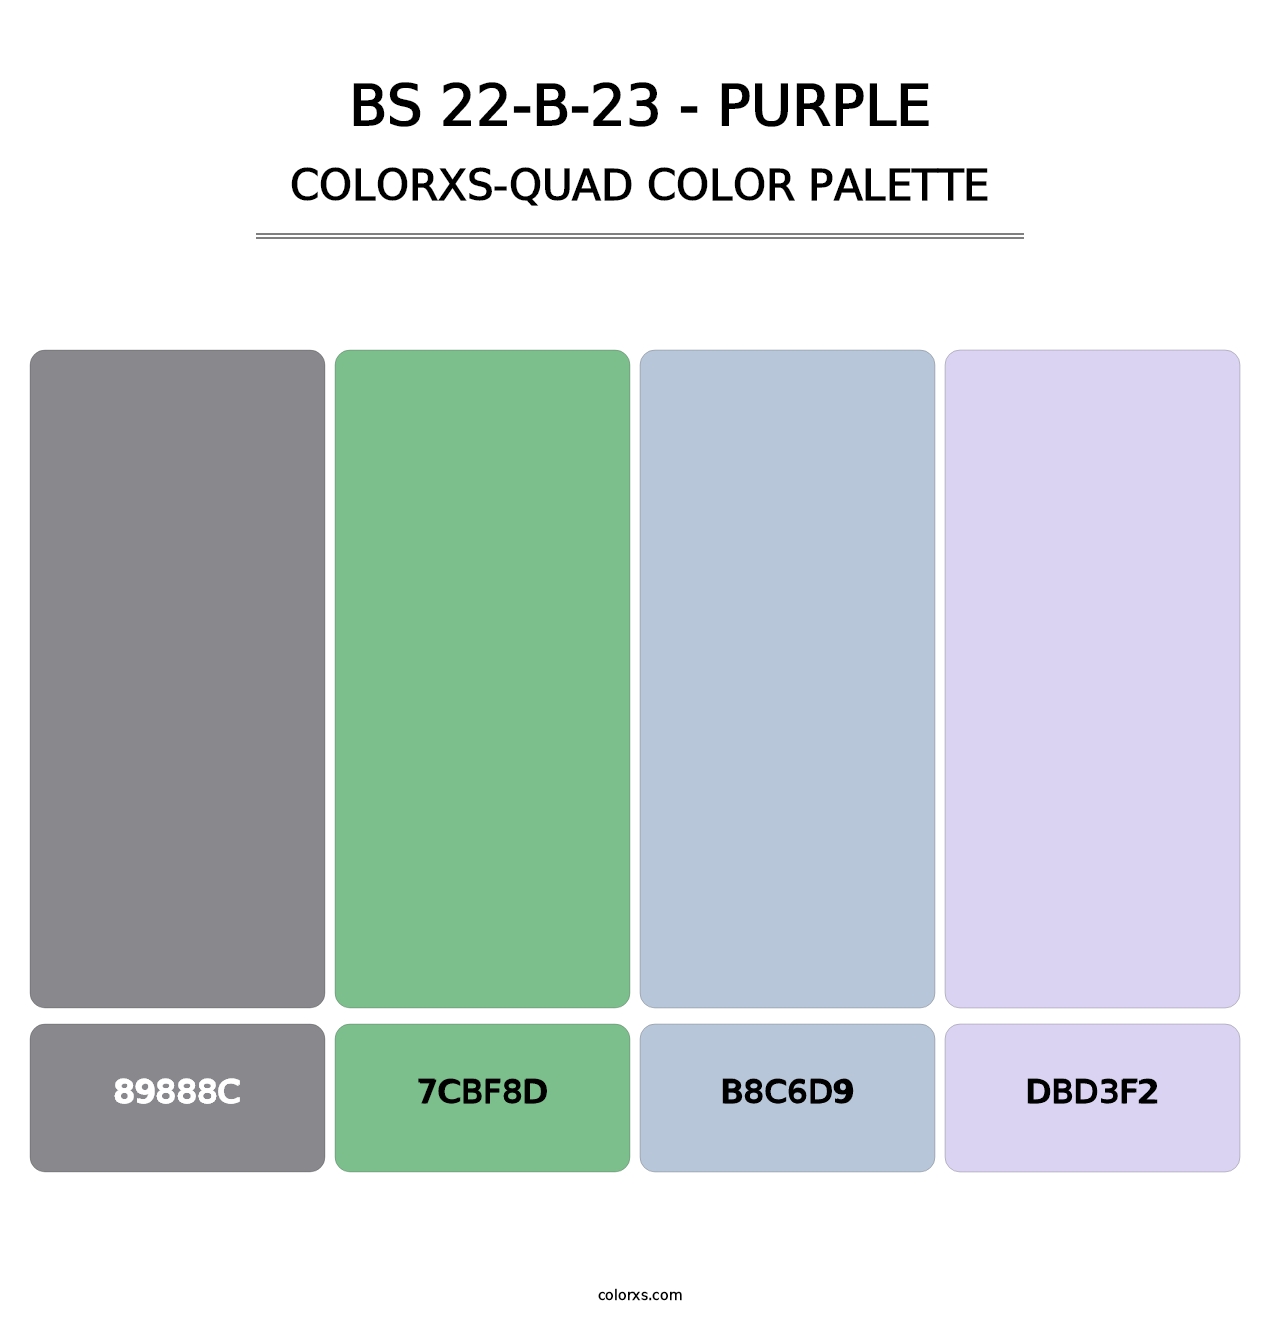 BS 22-B-23 - Purple - Colorxs Quad Palette